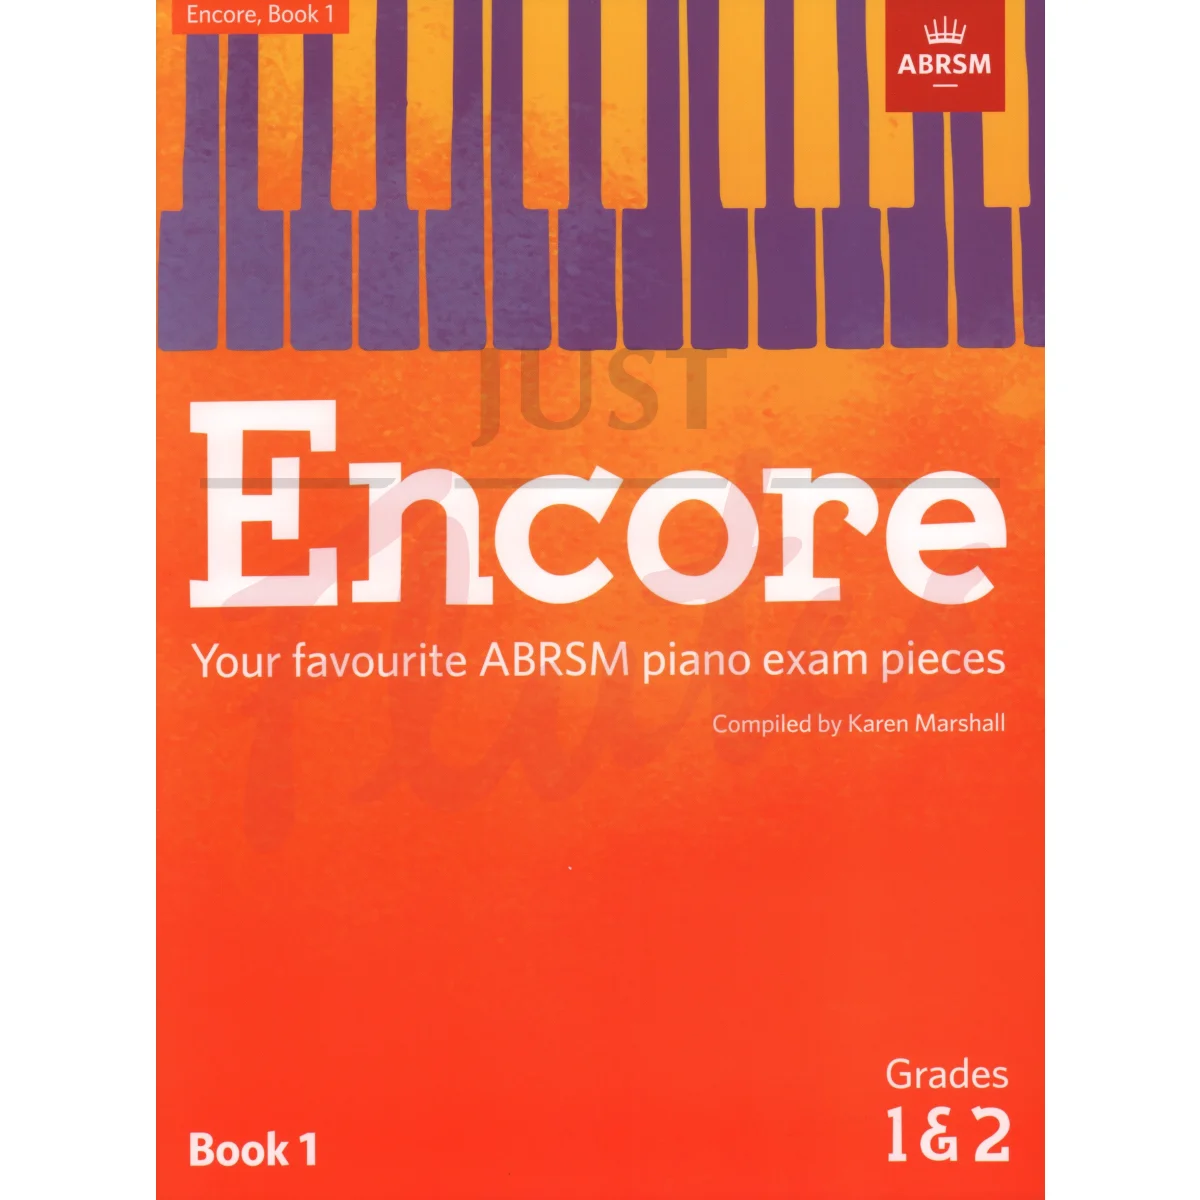 Encore - Favourite ABRSM Piano Exam Pieces Book 1